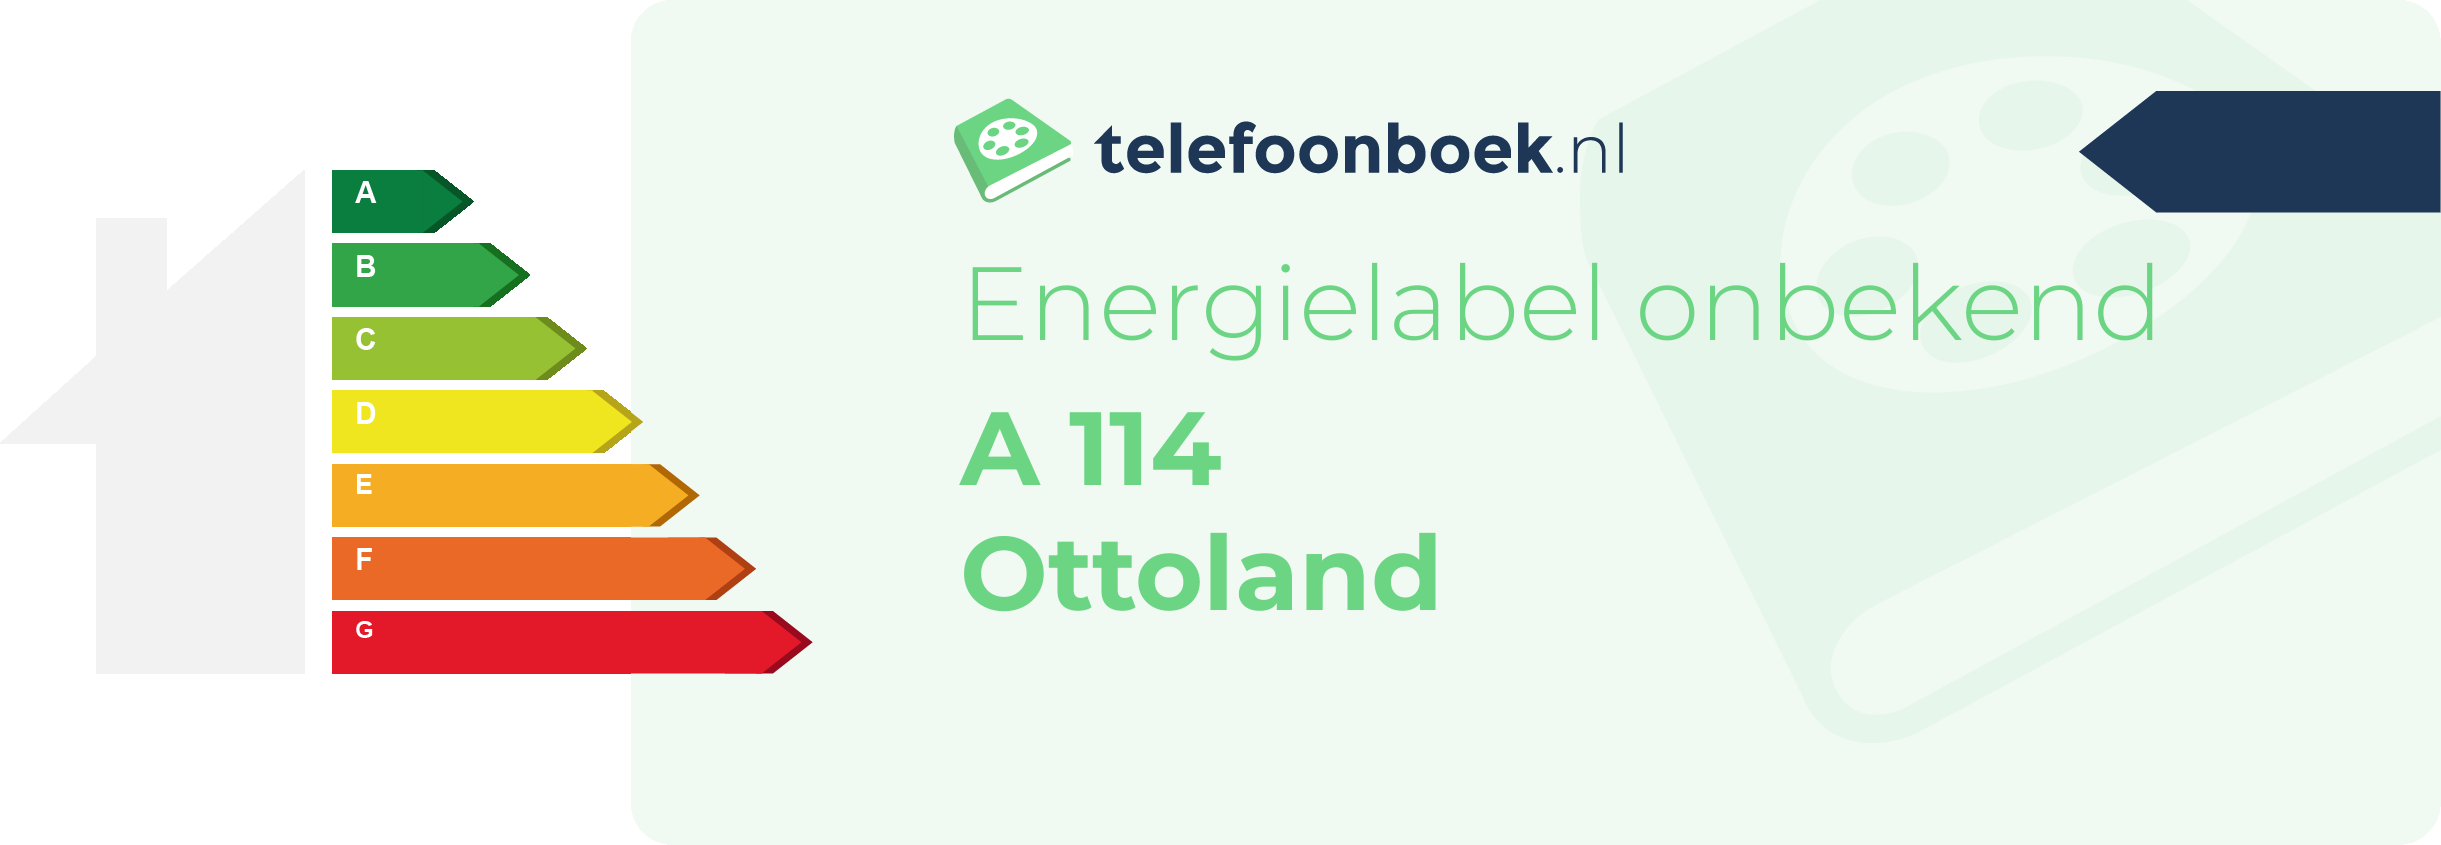 Energielabel A 114 Ottoland